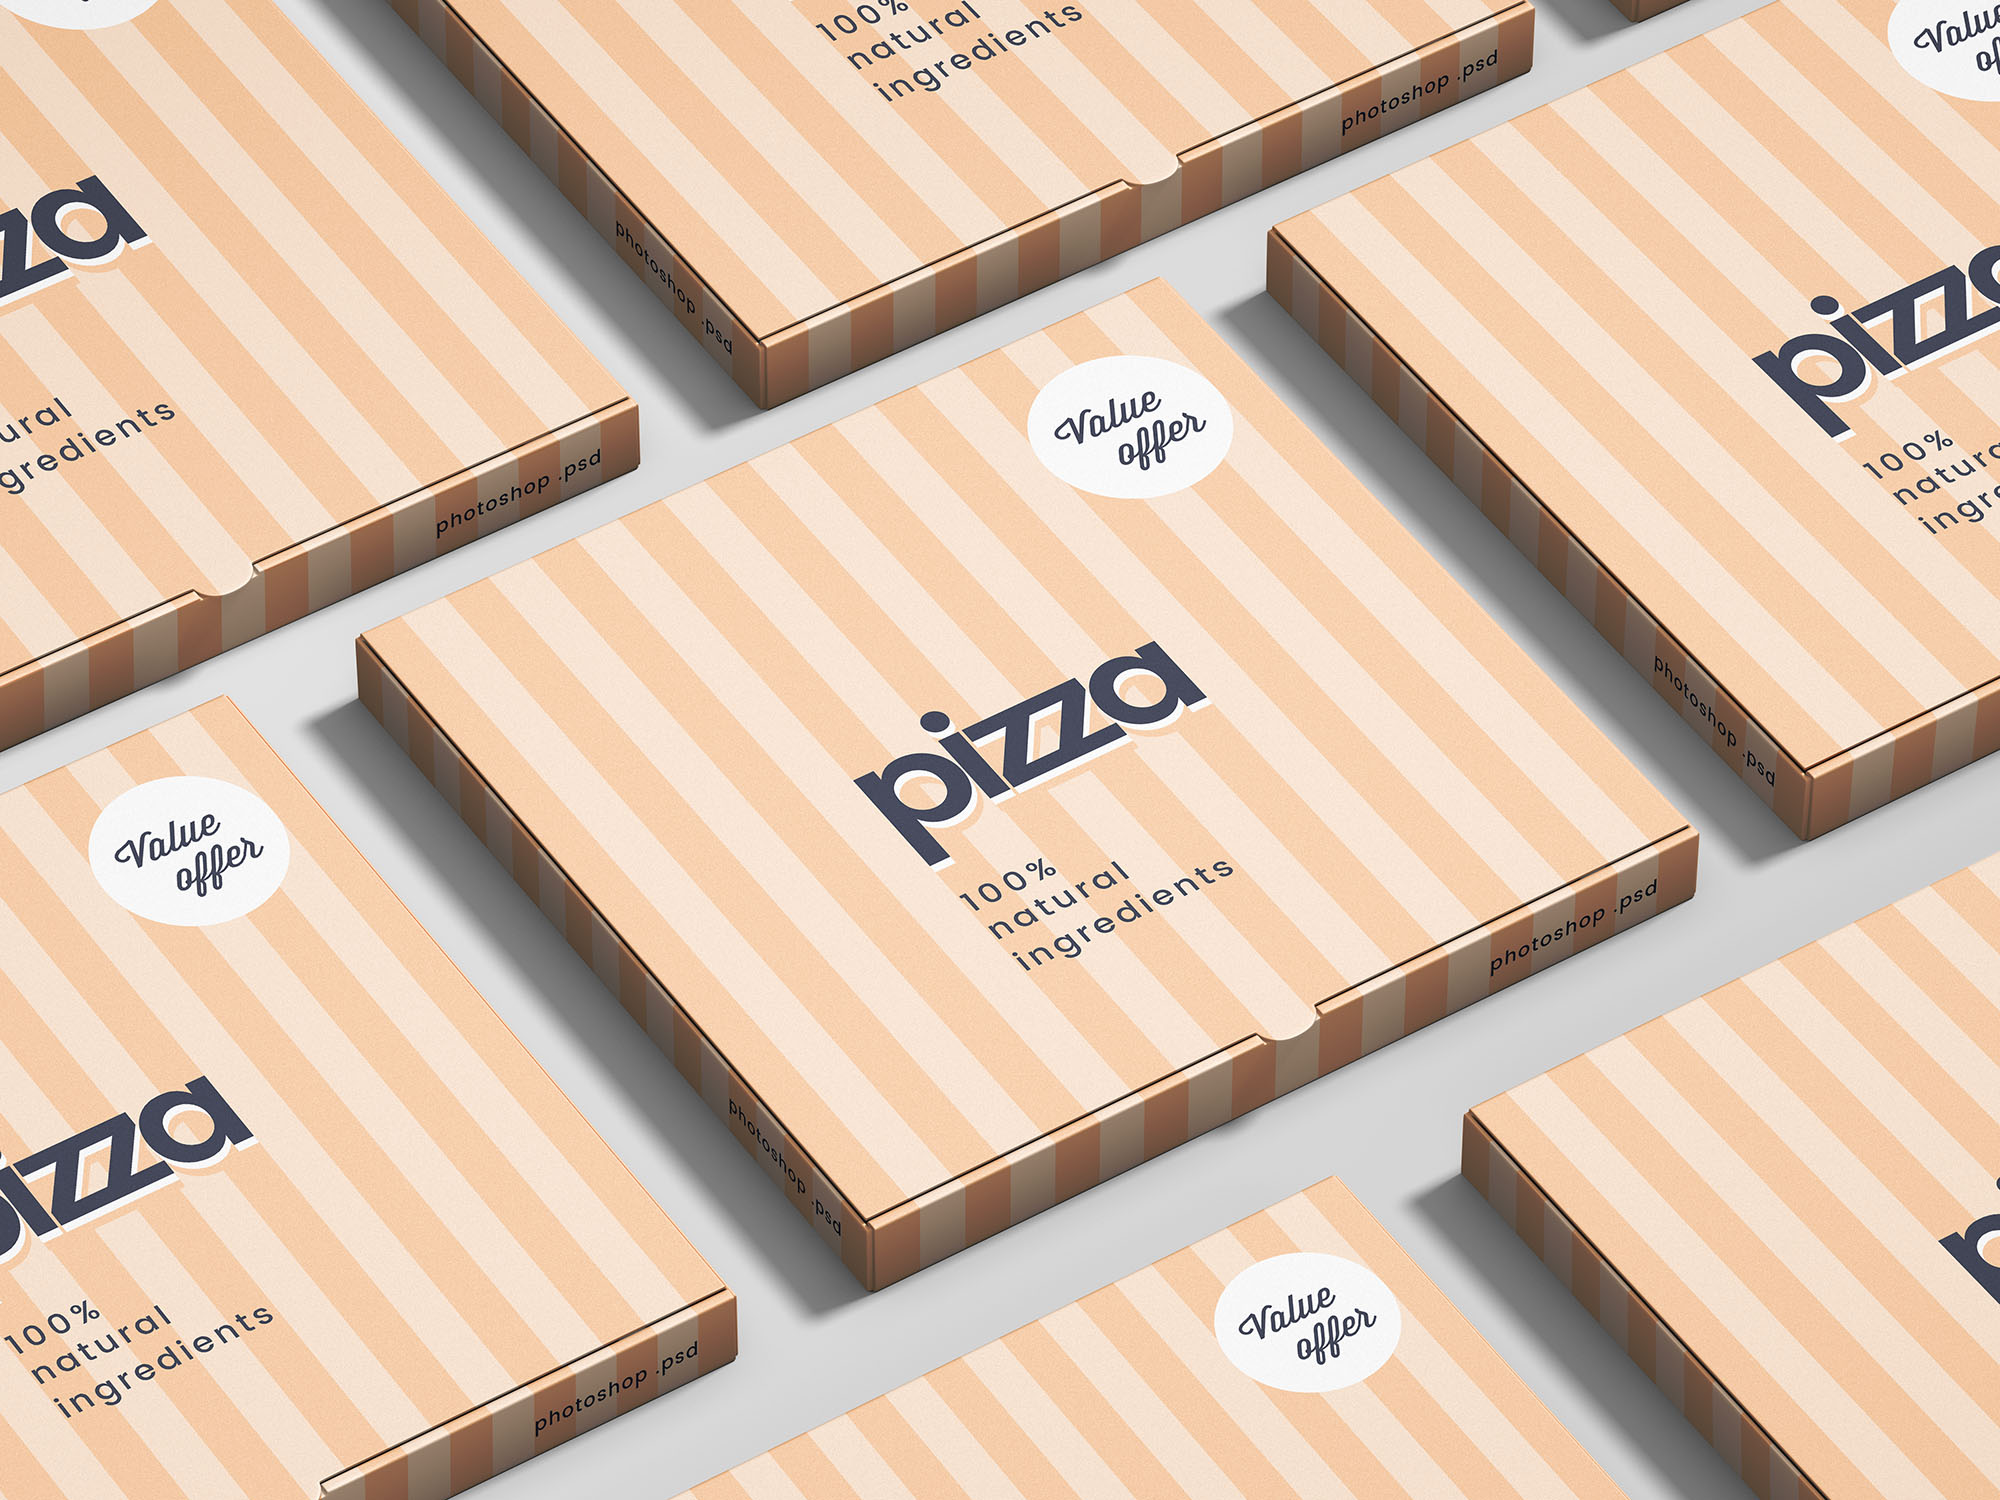 披萨盒食品包装设计样机贴图展示模版 Pizza Box Mo